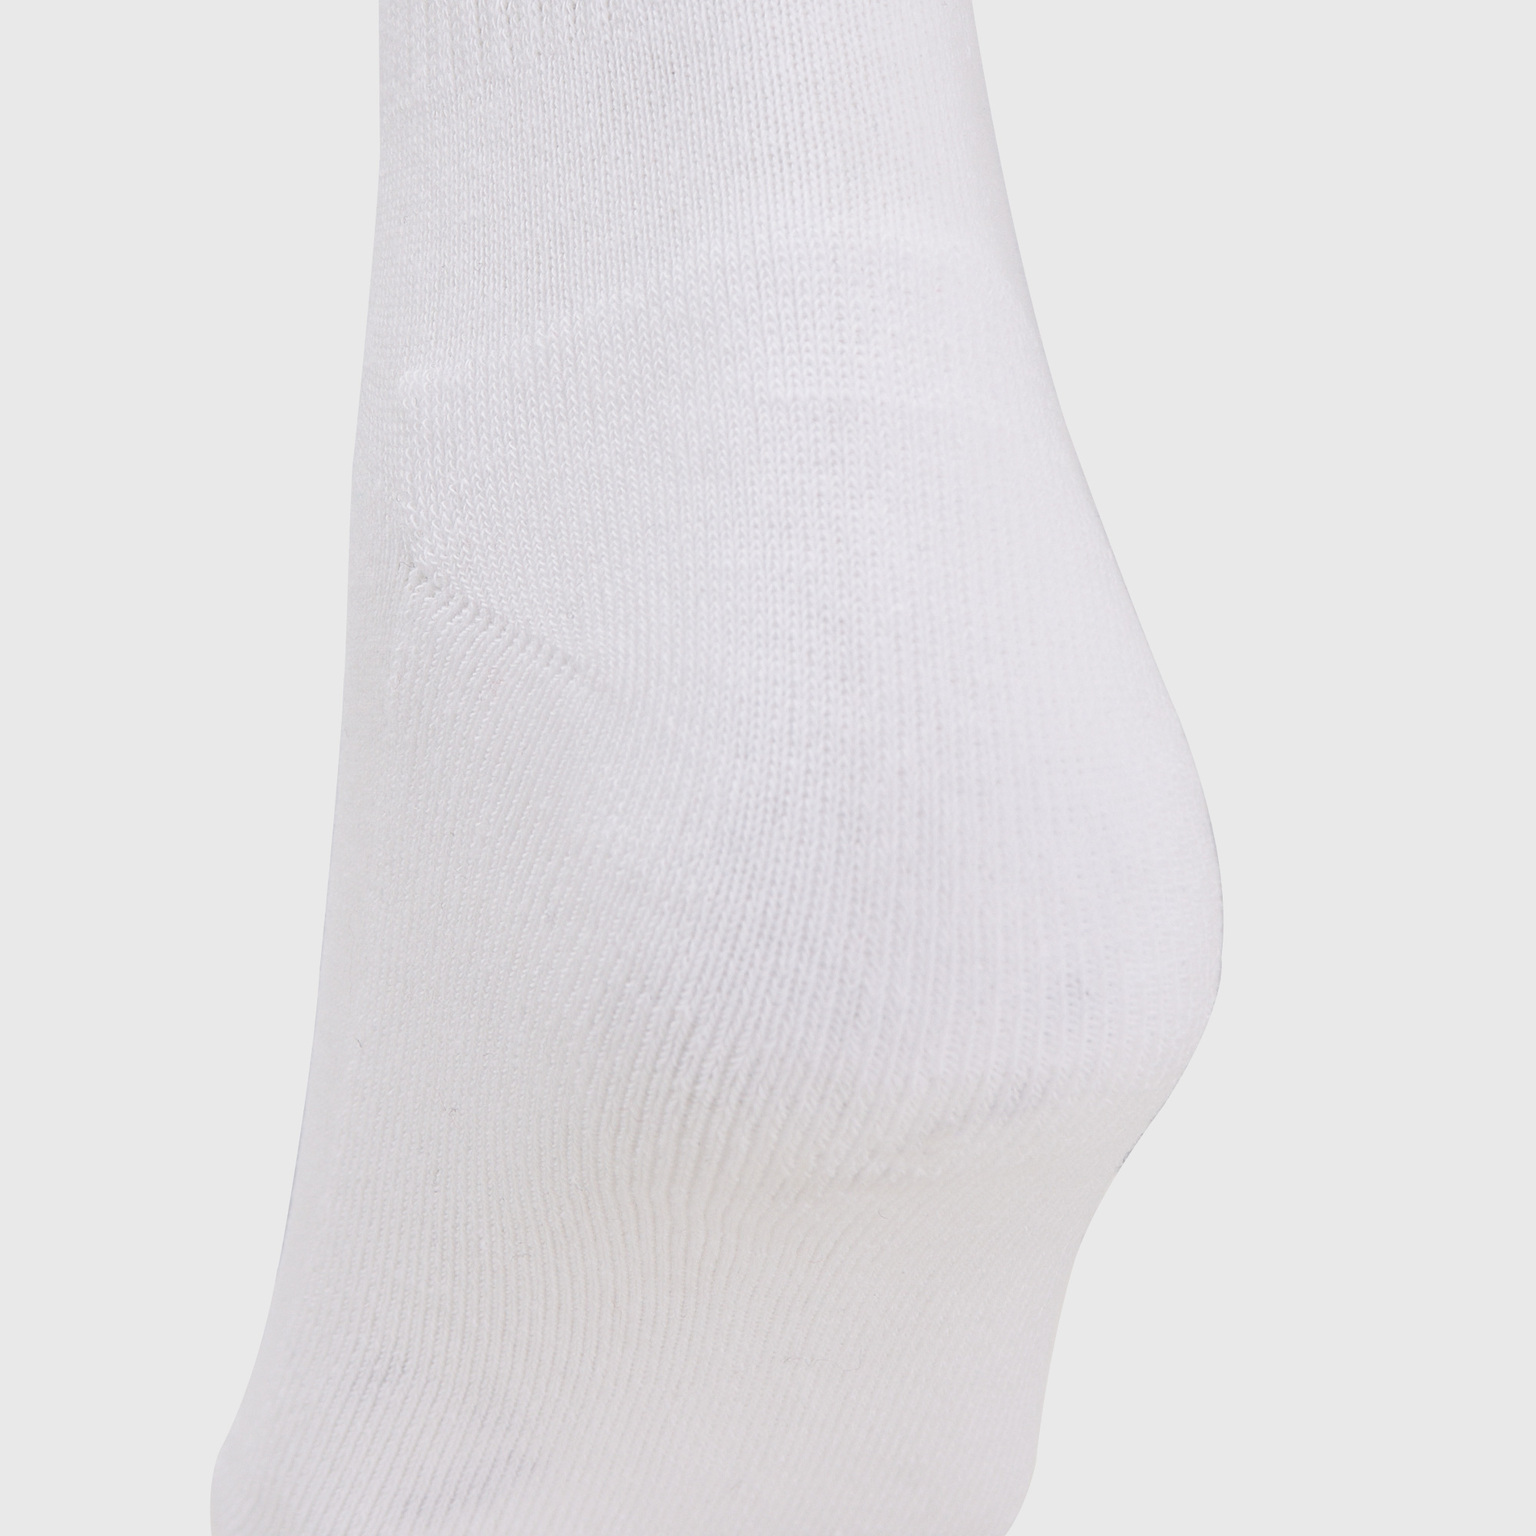 Комплект носков (3 пары) Fila Adult 126641-WB